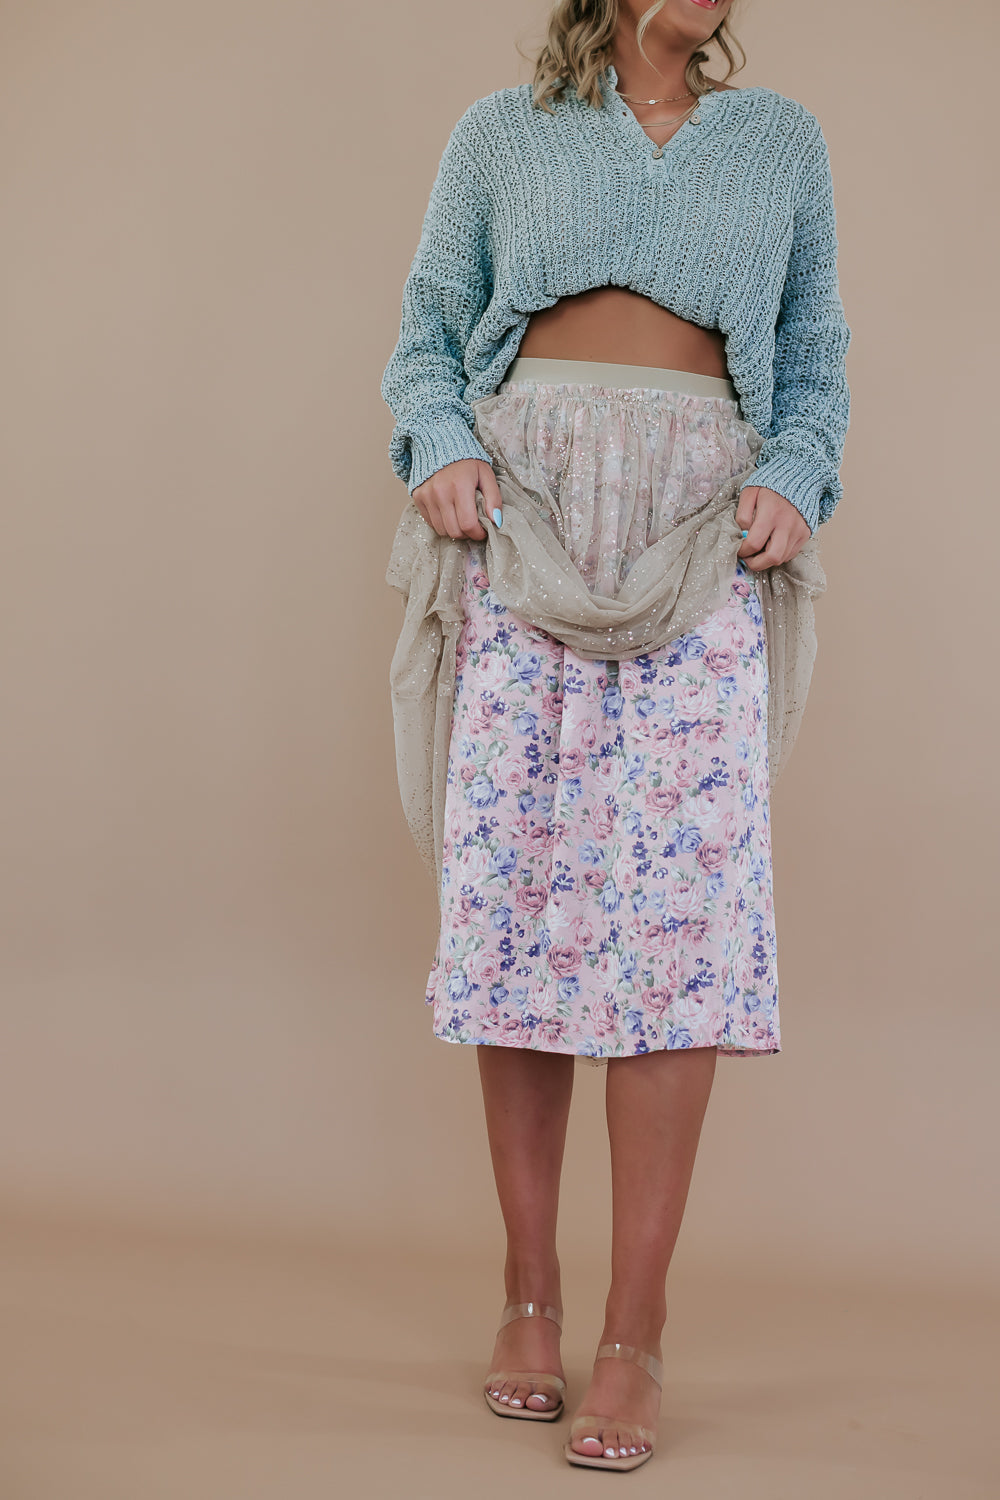 Garden Glisten Midi Skirt, Beige Pink